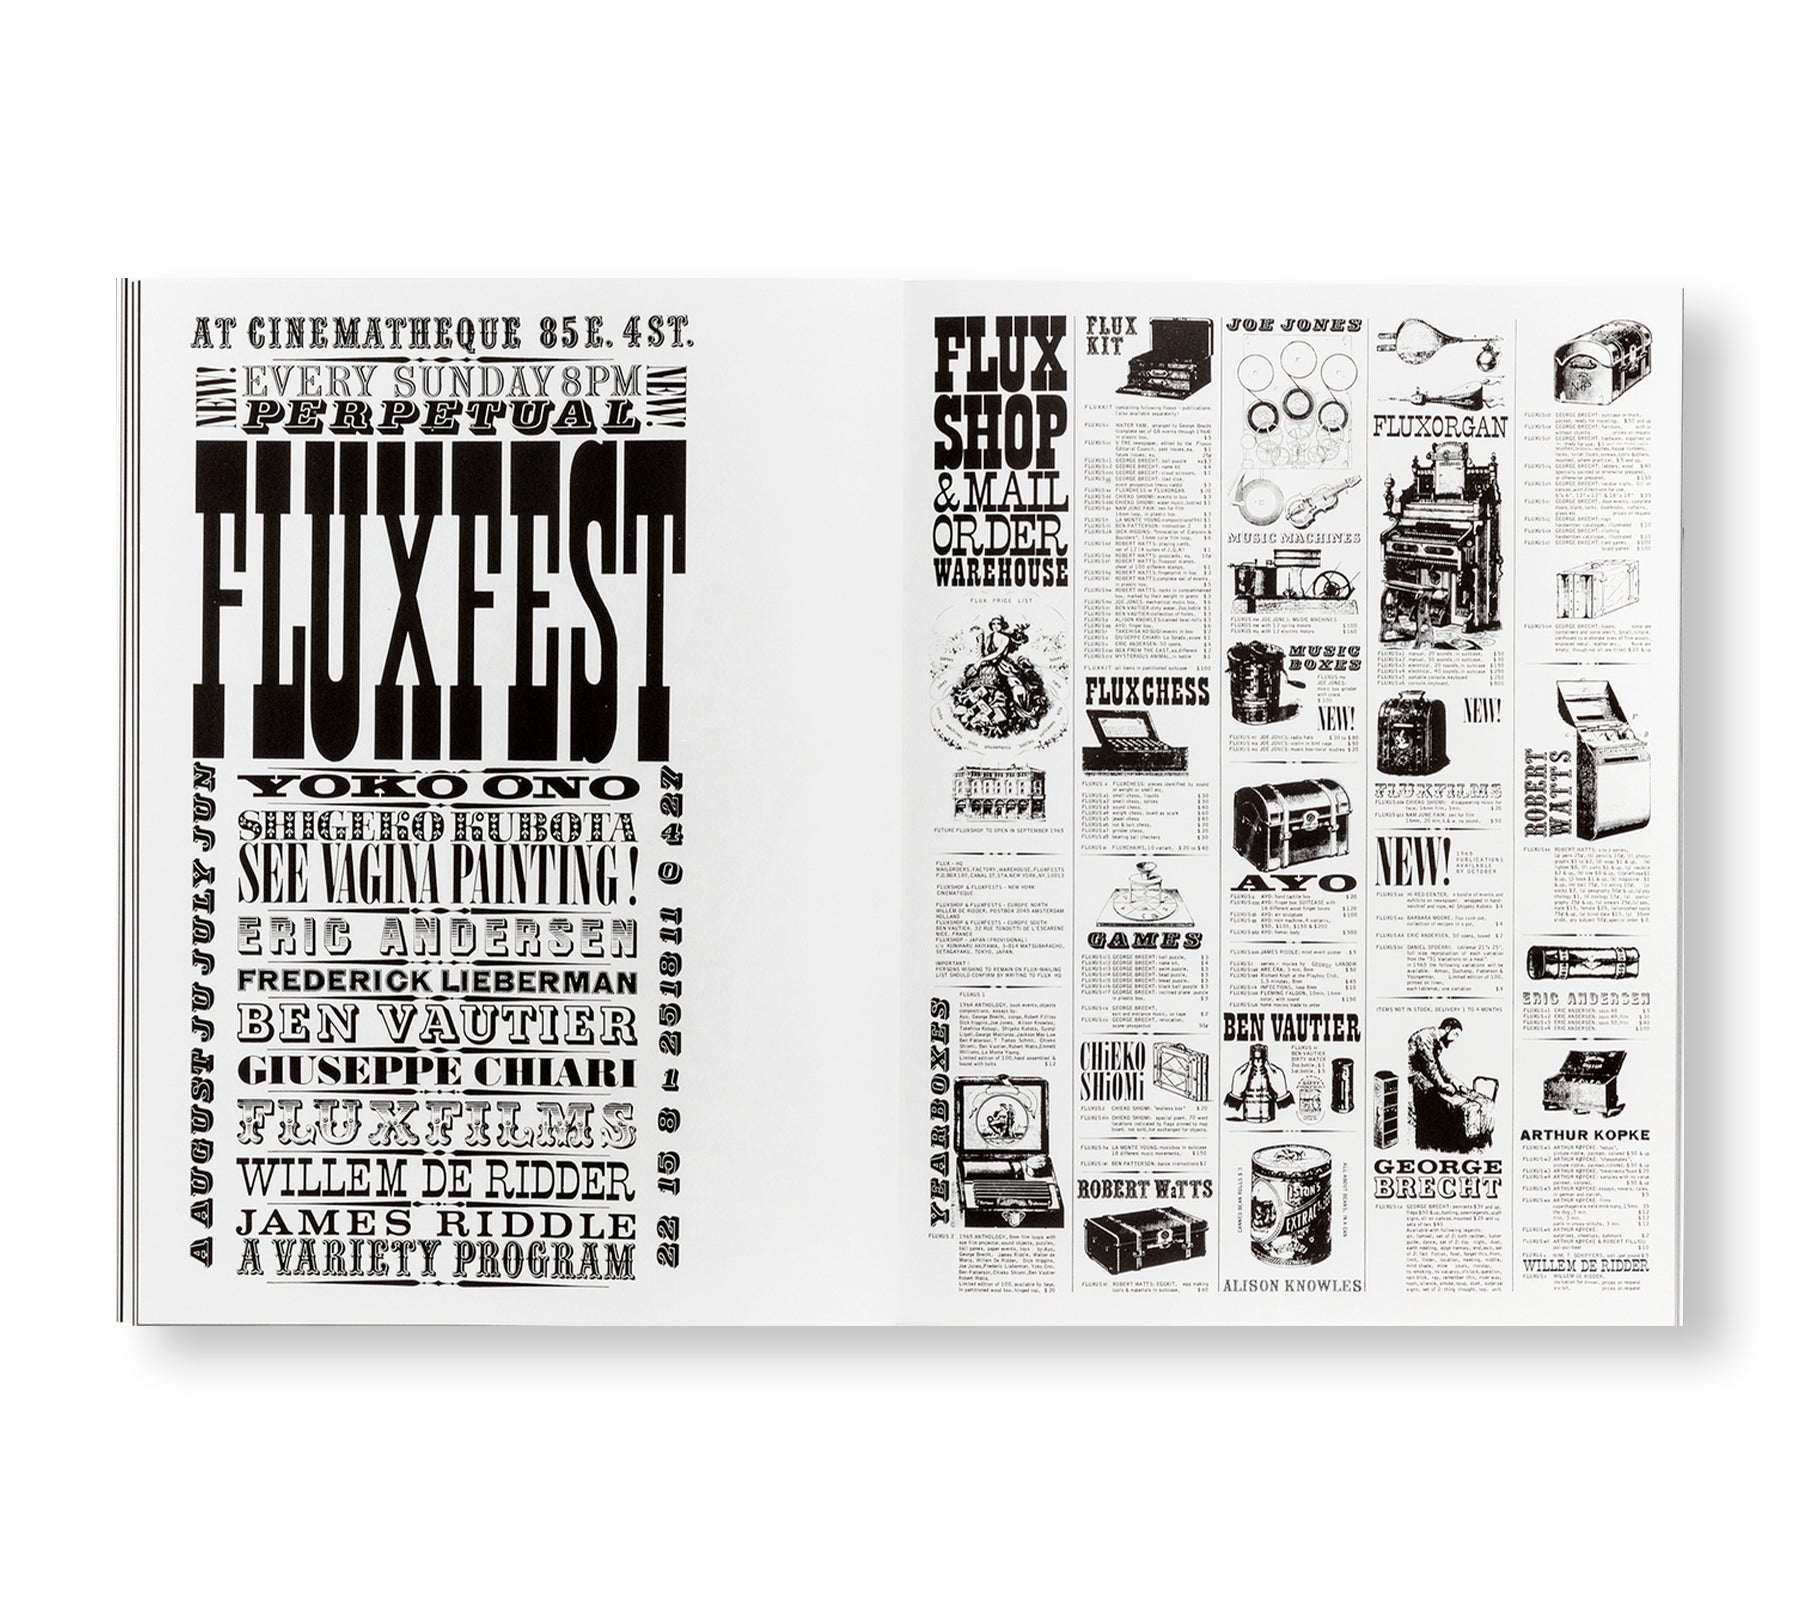 THE FLUXUS NEWSPAPER